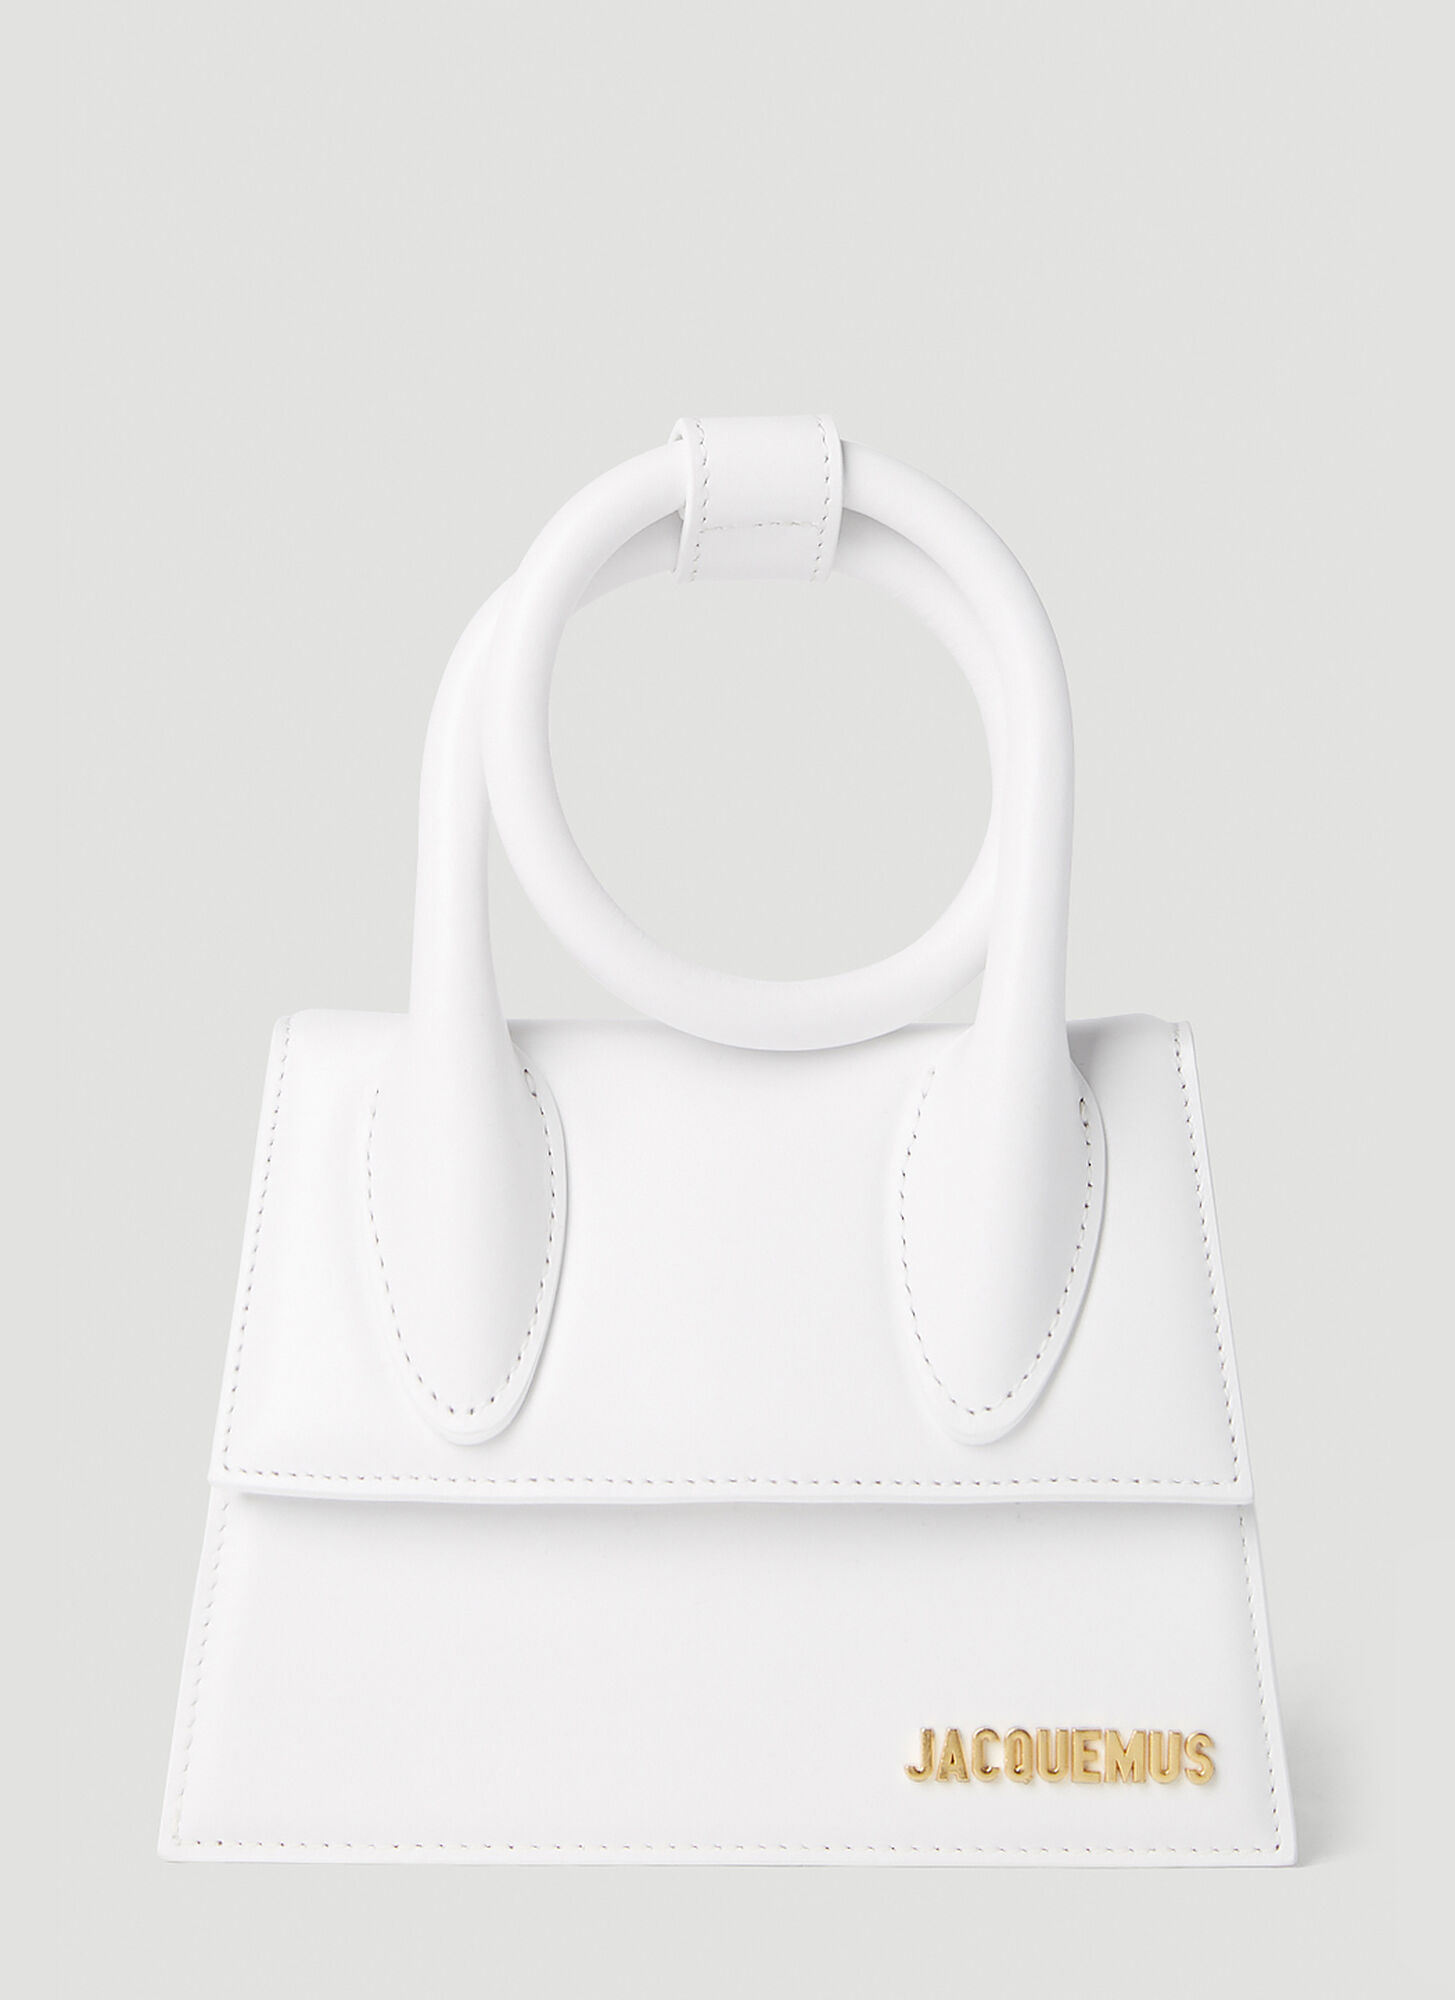 Jacquemus Le Chiquito Handbag In White